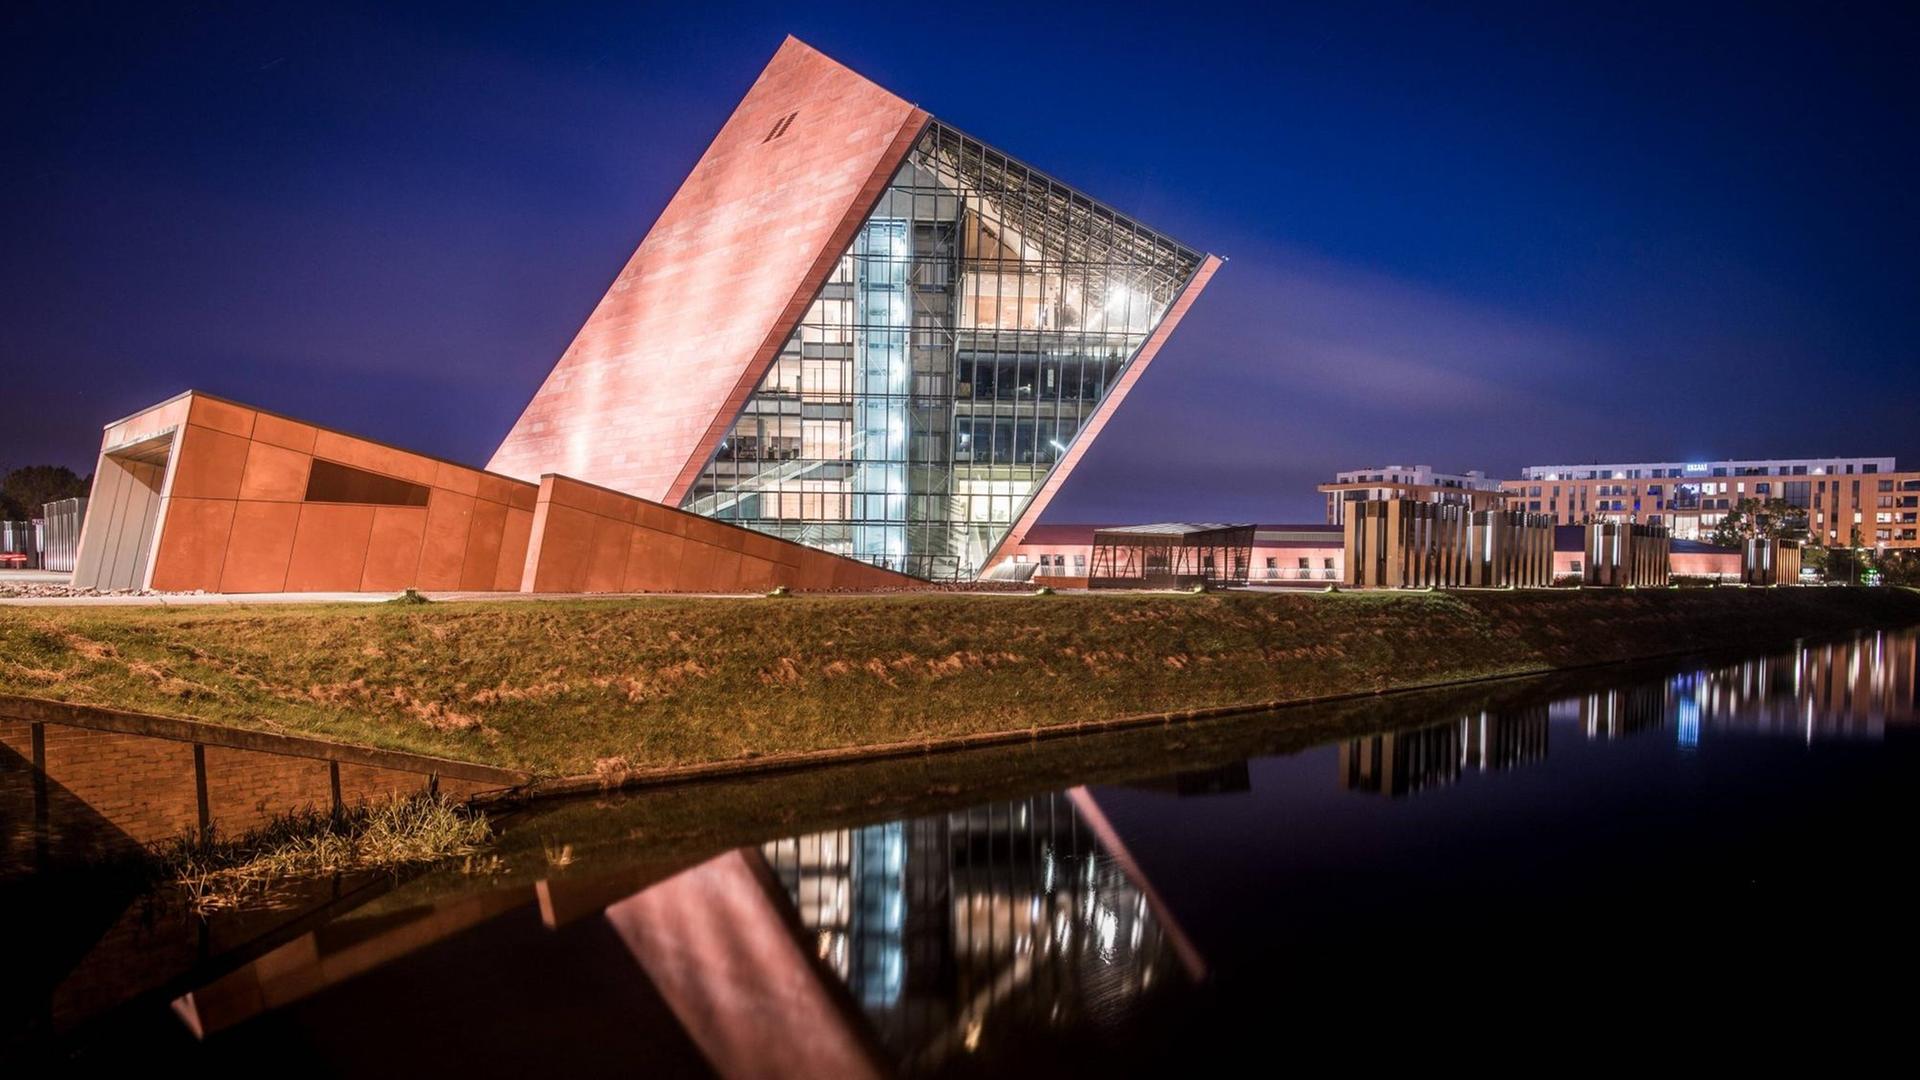 Der Museumsbau des Architekturbüro Kwadrat in Gdynia in Form eines schräg aus dem Boden ragenden und teilweise verglasten Würfels in nächtlicher Beleuchtung.